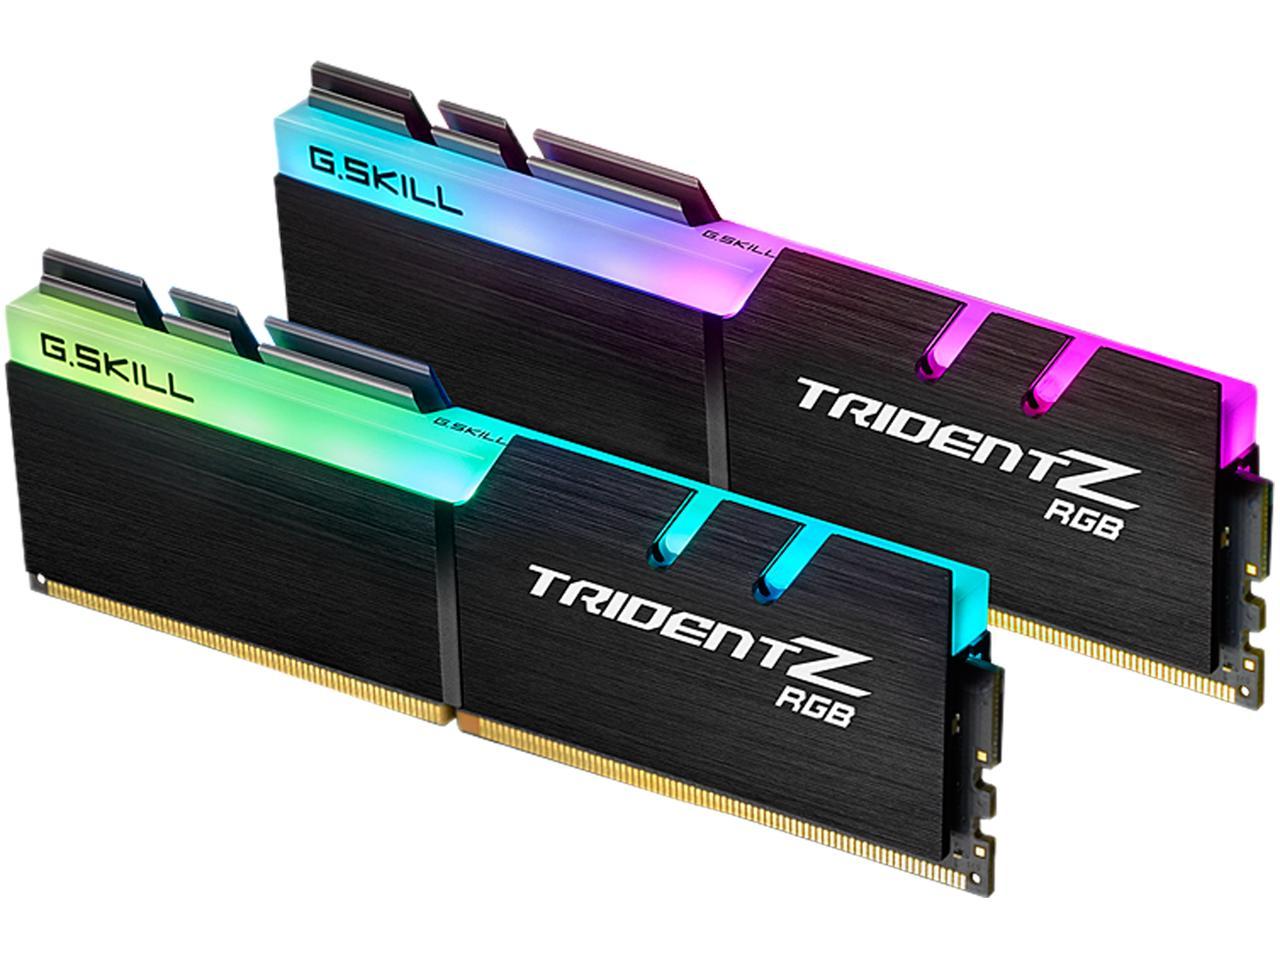 G.SKILL TridentZ RGB Series 16GB (2 x 8GB) 288-Pin DDR4 SDRAM DDR4 3466 (PC4 27700) Desktop Memory Model F4-3466C18D-16GTZRXB